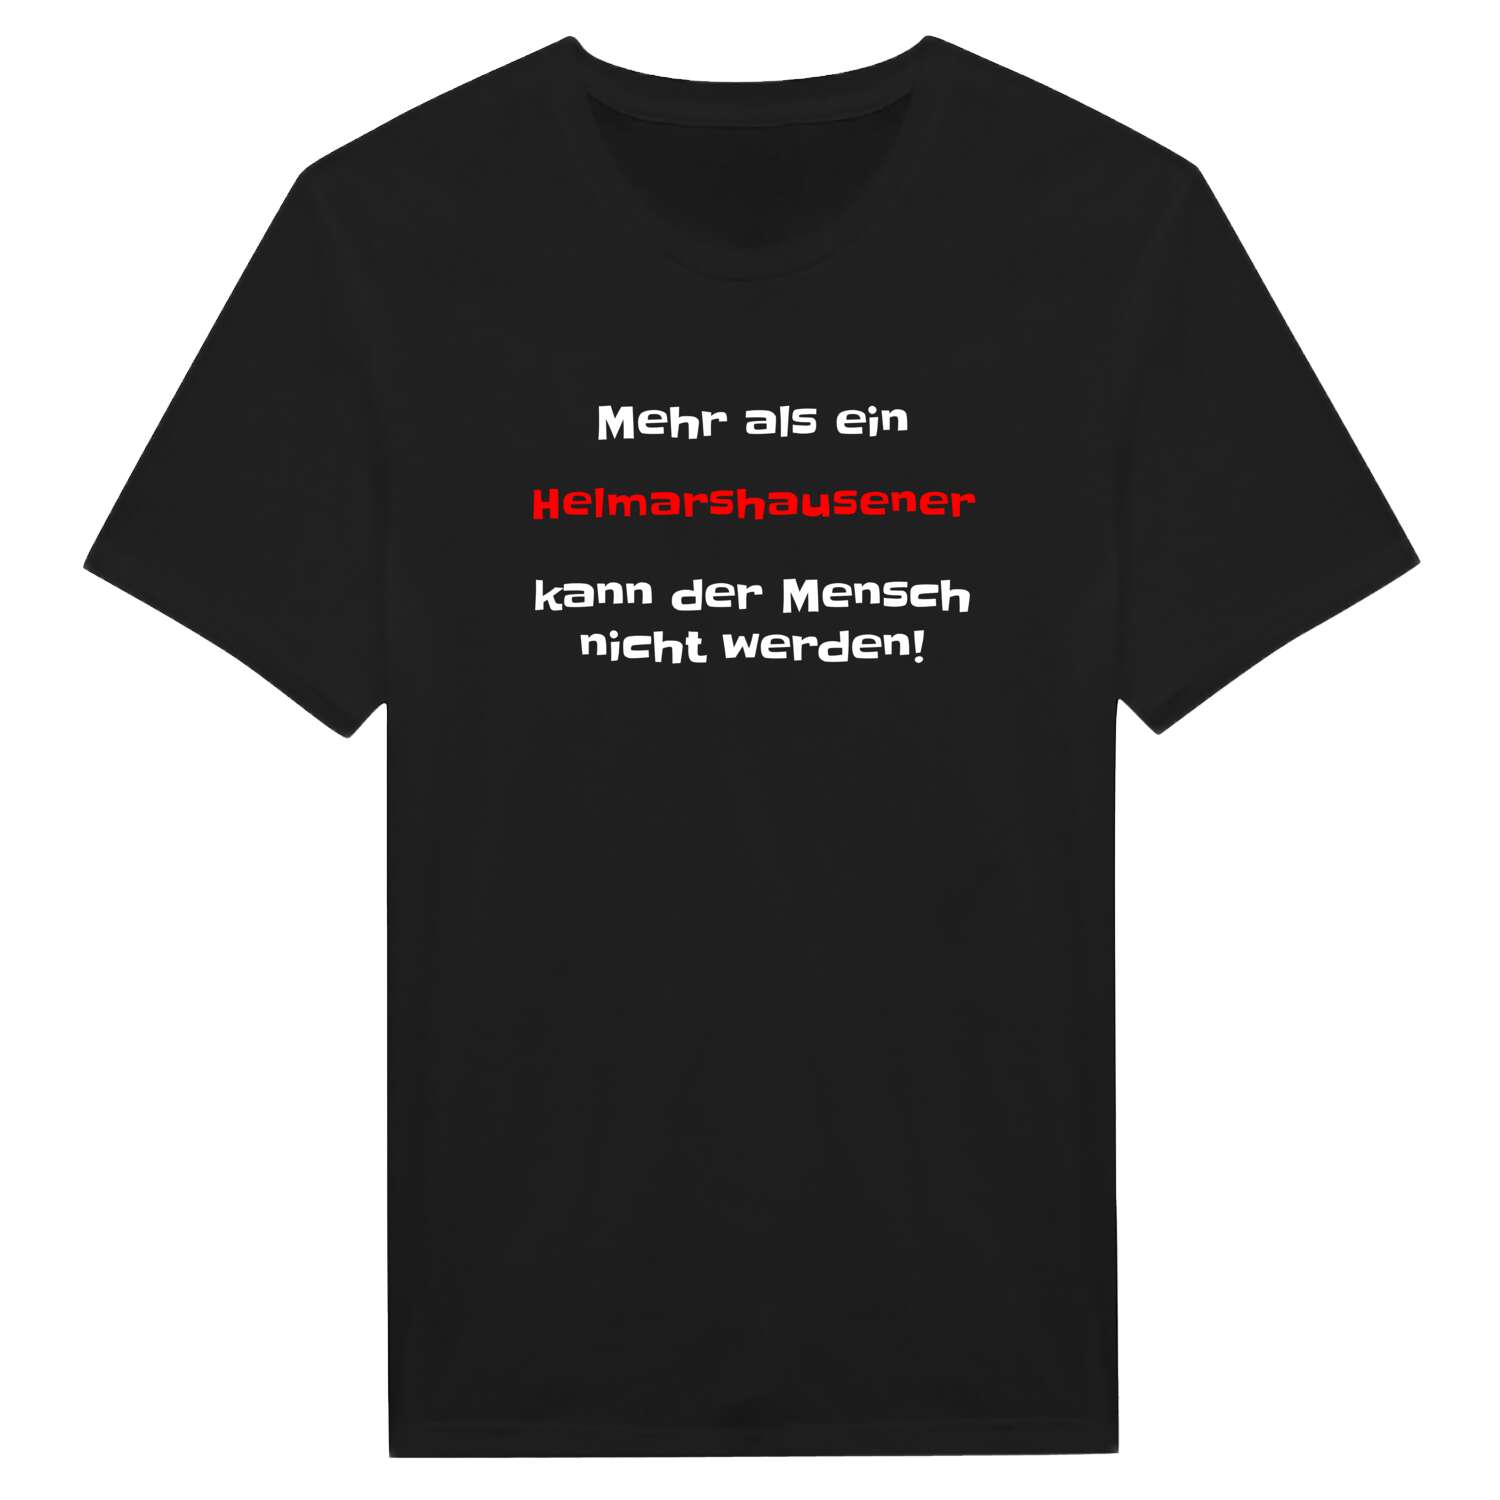 Helmarshausen T-Shirt »Mehr als ein«